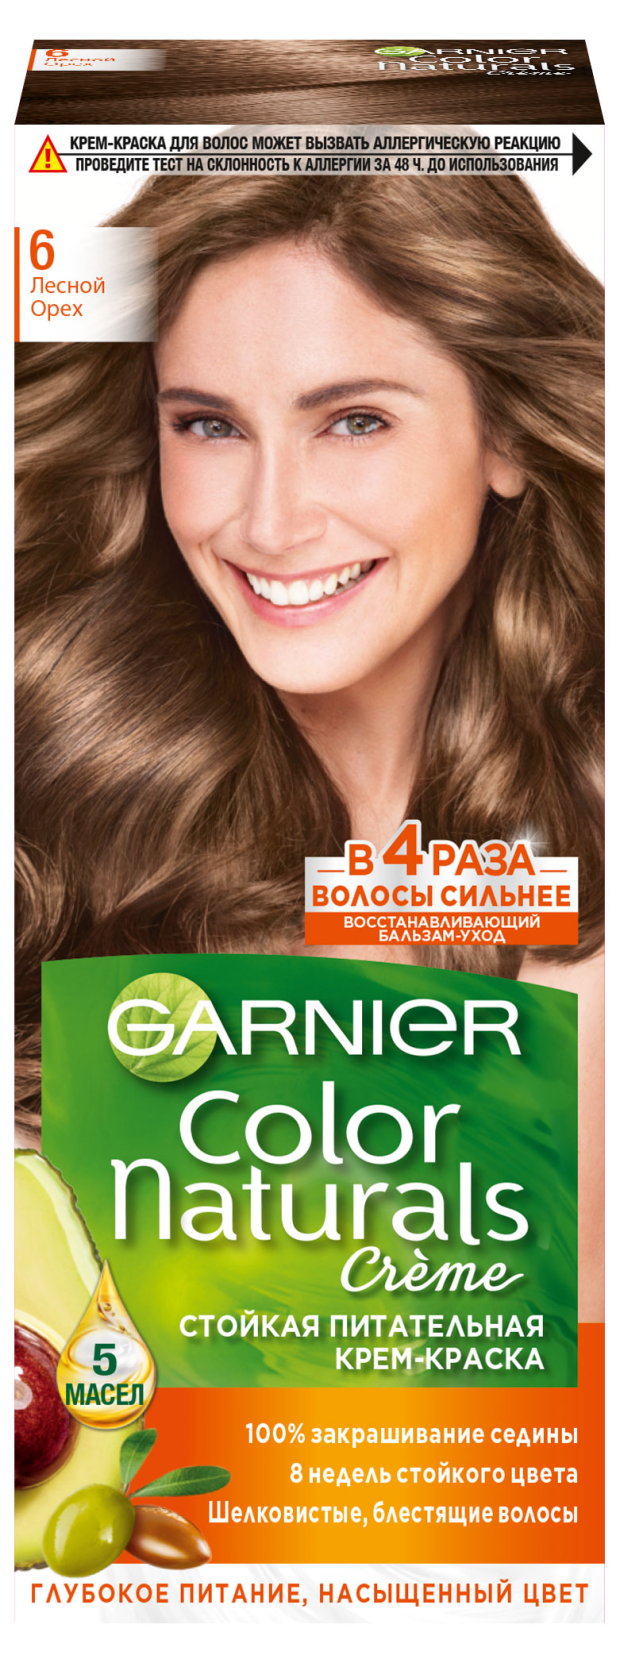 Garnier Стойкая питательная крем-краска для волос Color Naturals оттенок 6 Лесной орех